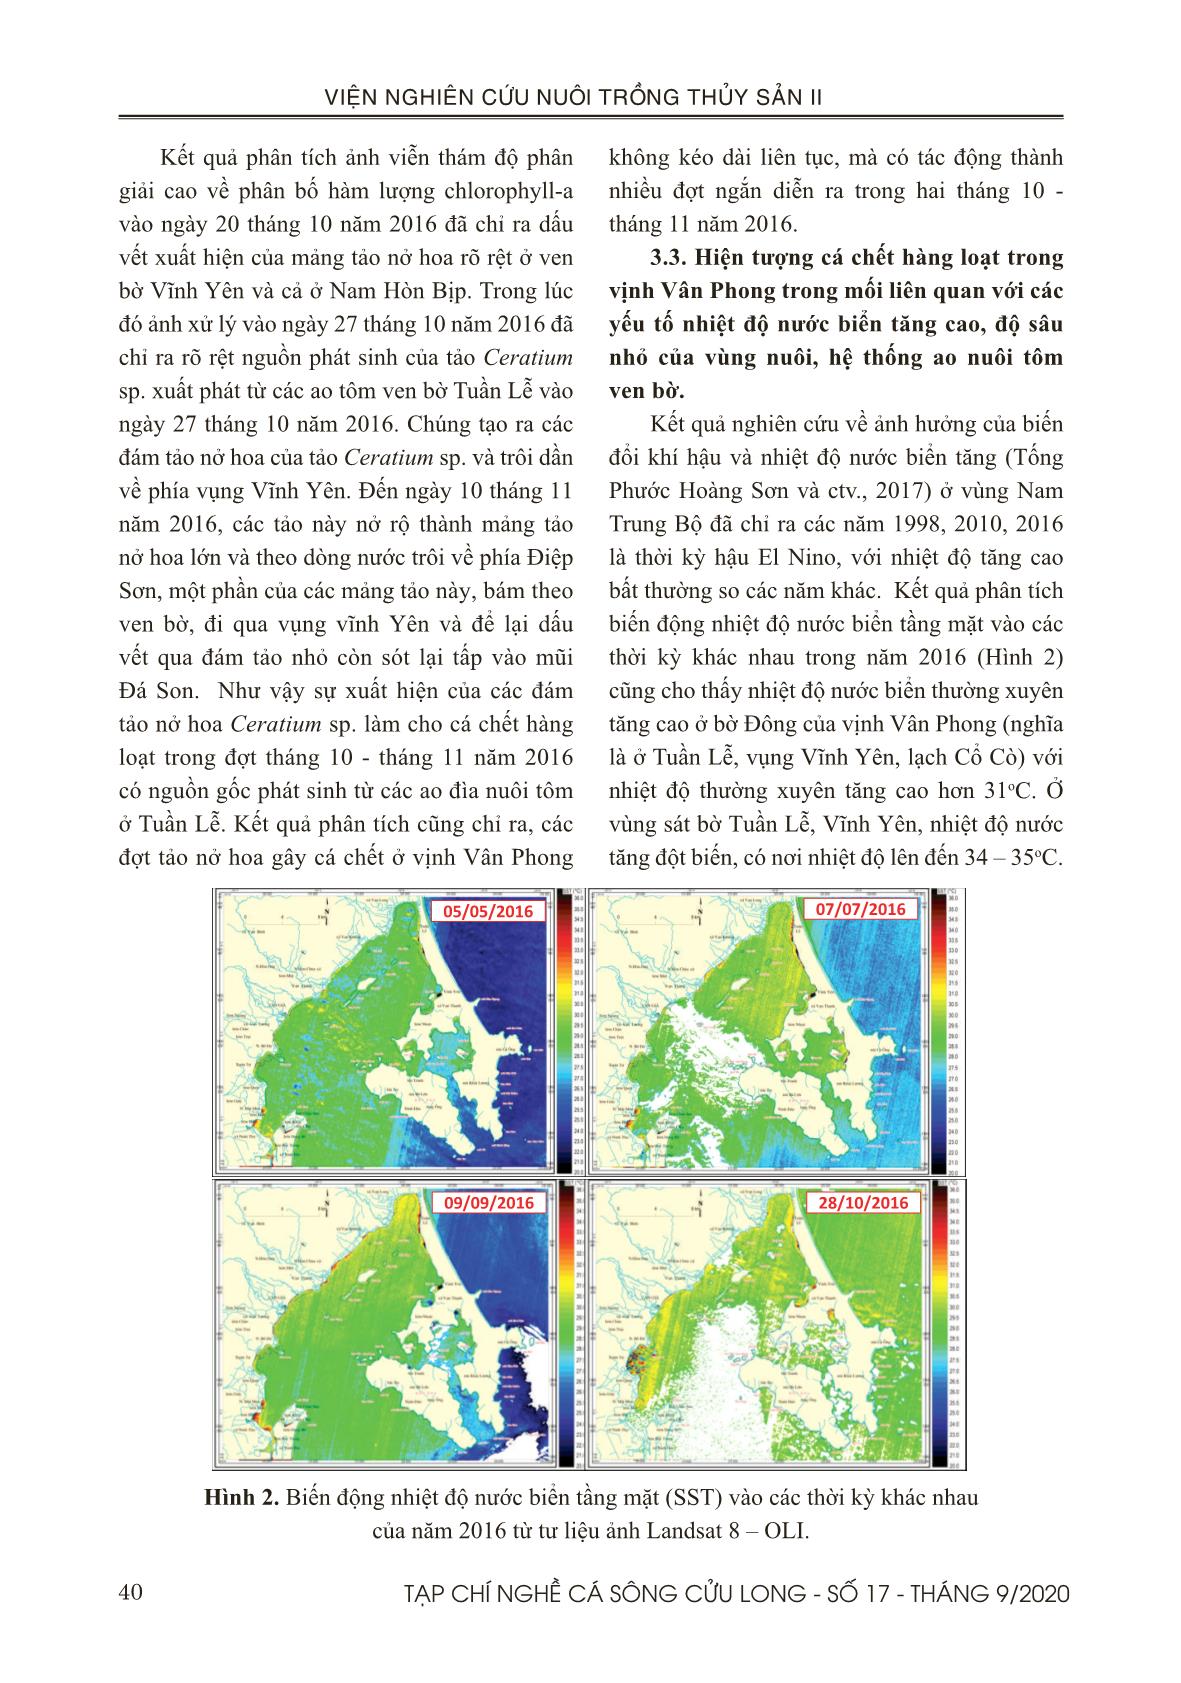 Môi trường nước vào thời điểm cá chết hàng loạt tháng 11 năm 2016 ở vịnh Vân Phong – Khánh Hòa dưới góc nhìn viễn thám trang 6